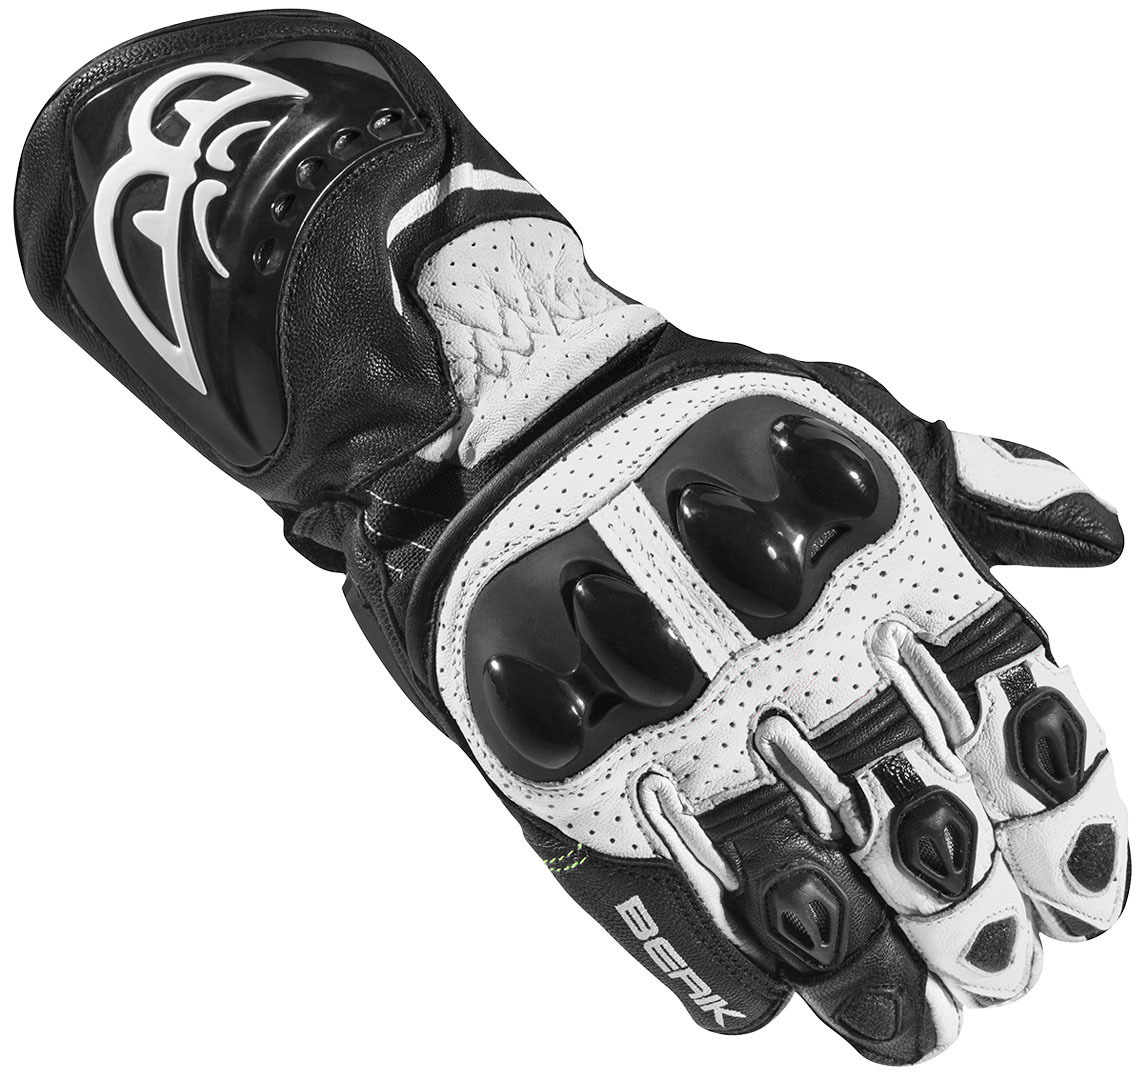 Мотоциклетные перчатки Berik Spa Evo с длинными манжетами, черный/белый мотоциклетные перчатки spa evo berik черный